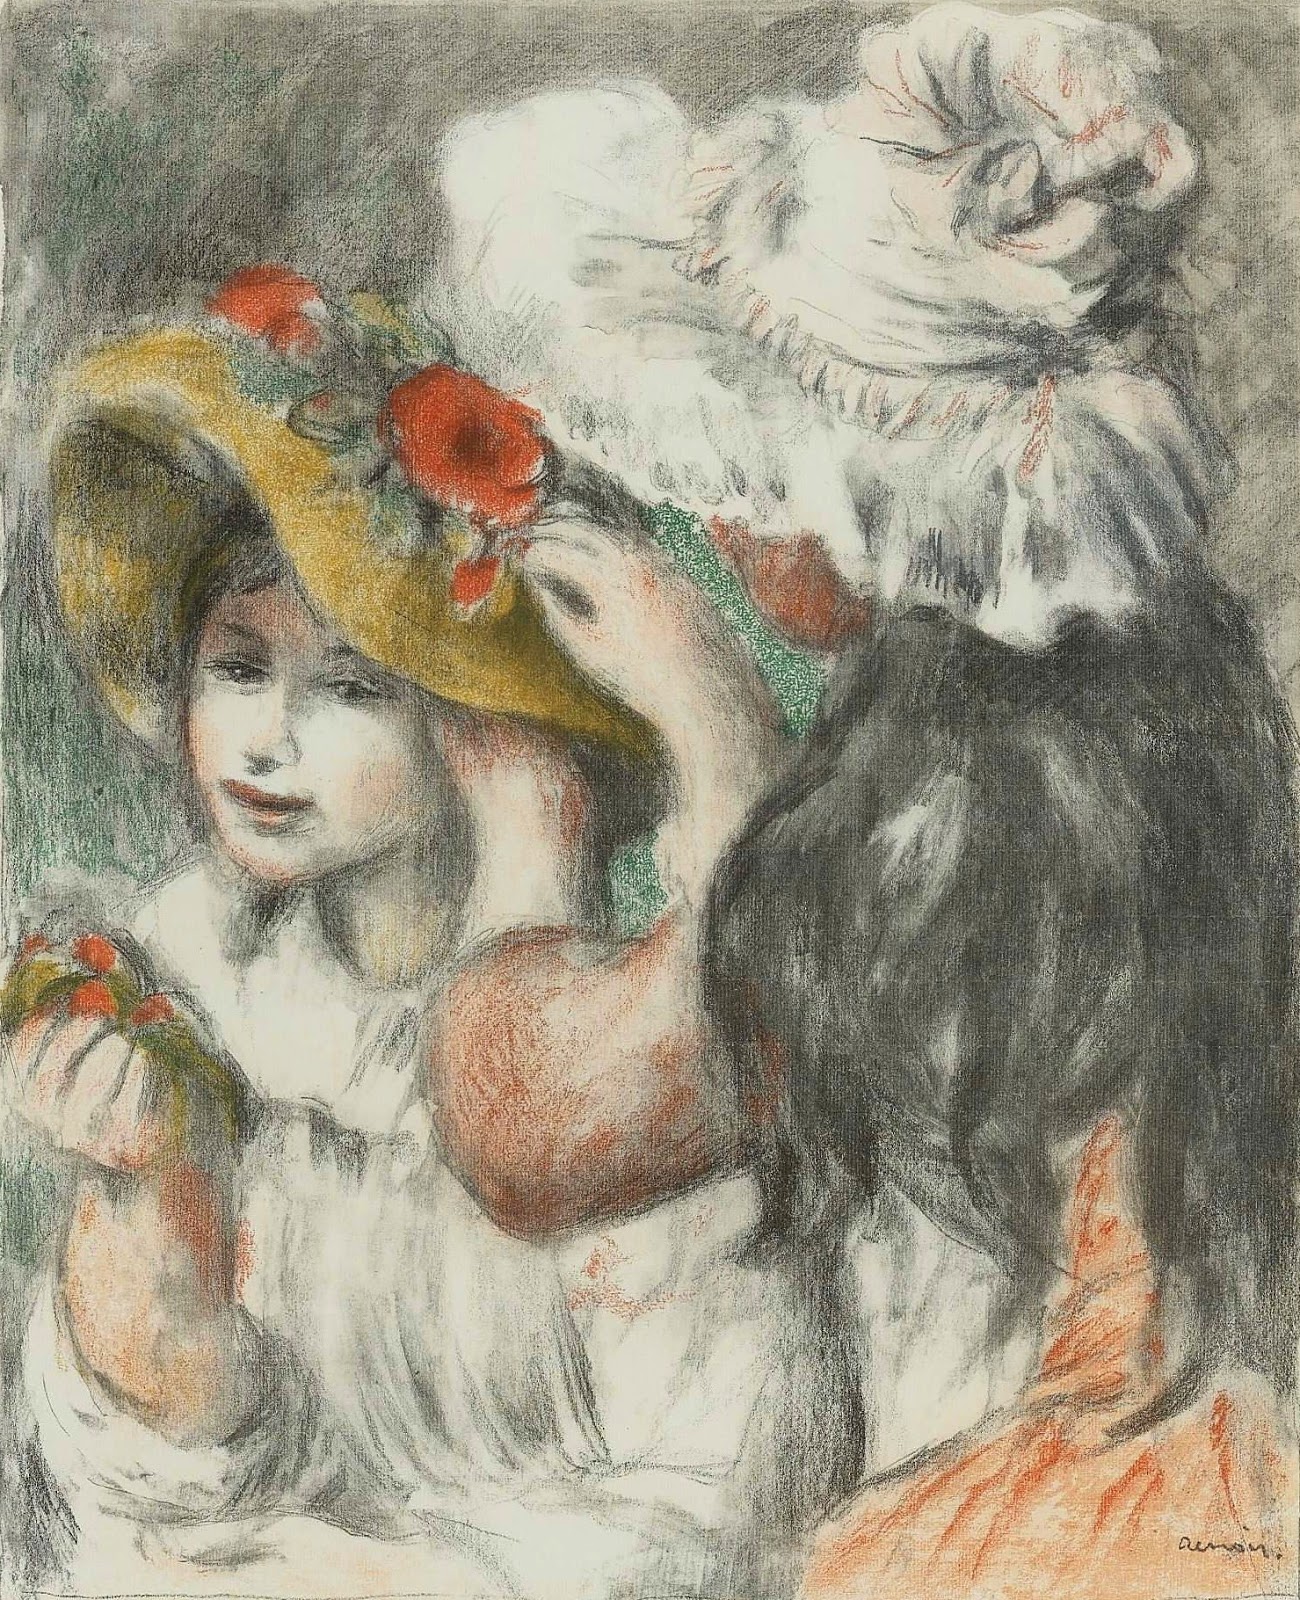 Pierre+Auguste+Renoir-1841-1-19 (876).jpg